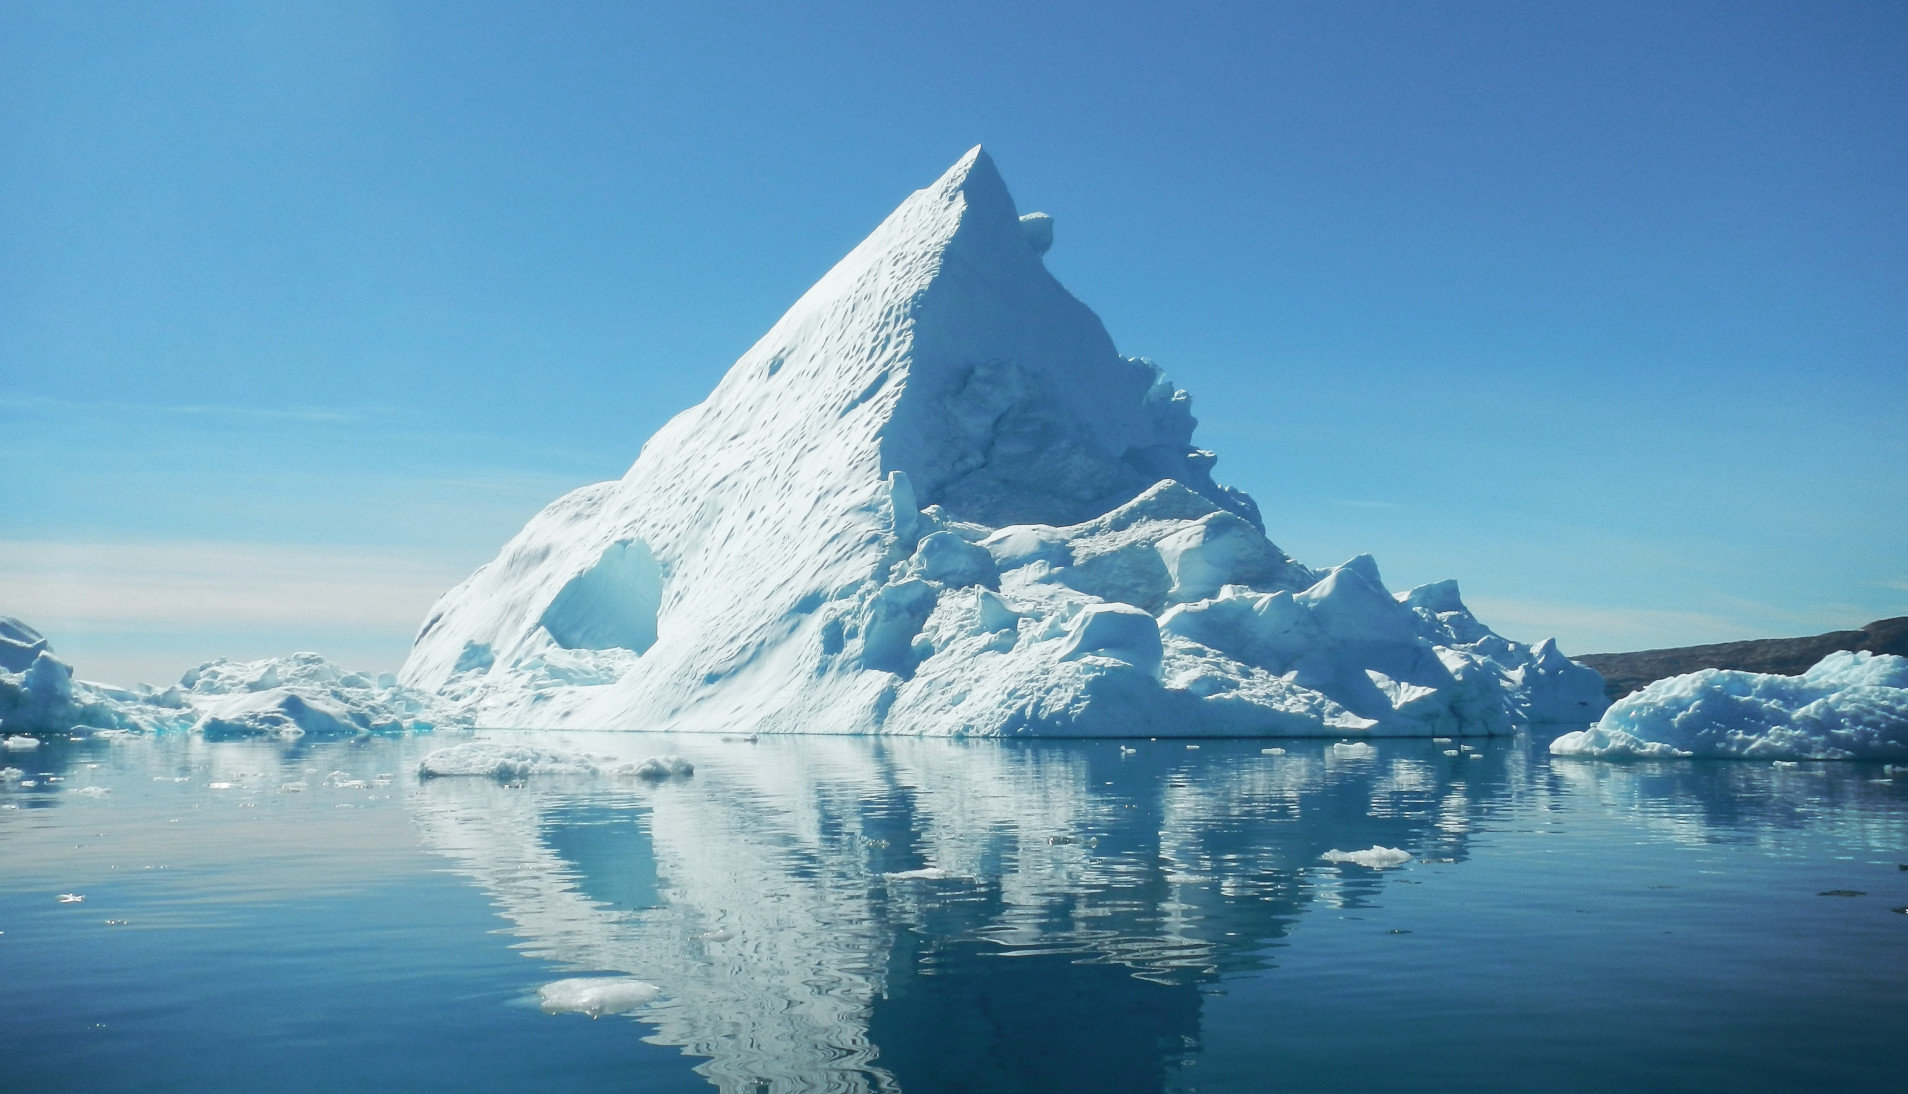 Αρκτικός Ωκεανός: Έρευνα αποκαλύπτει ότι η υπερθέρμανση ξεκίνησε 100 χρόνια πριν απ΄αυτό που γνωρίζαμε